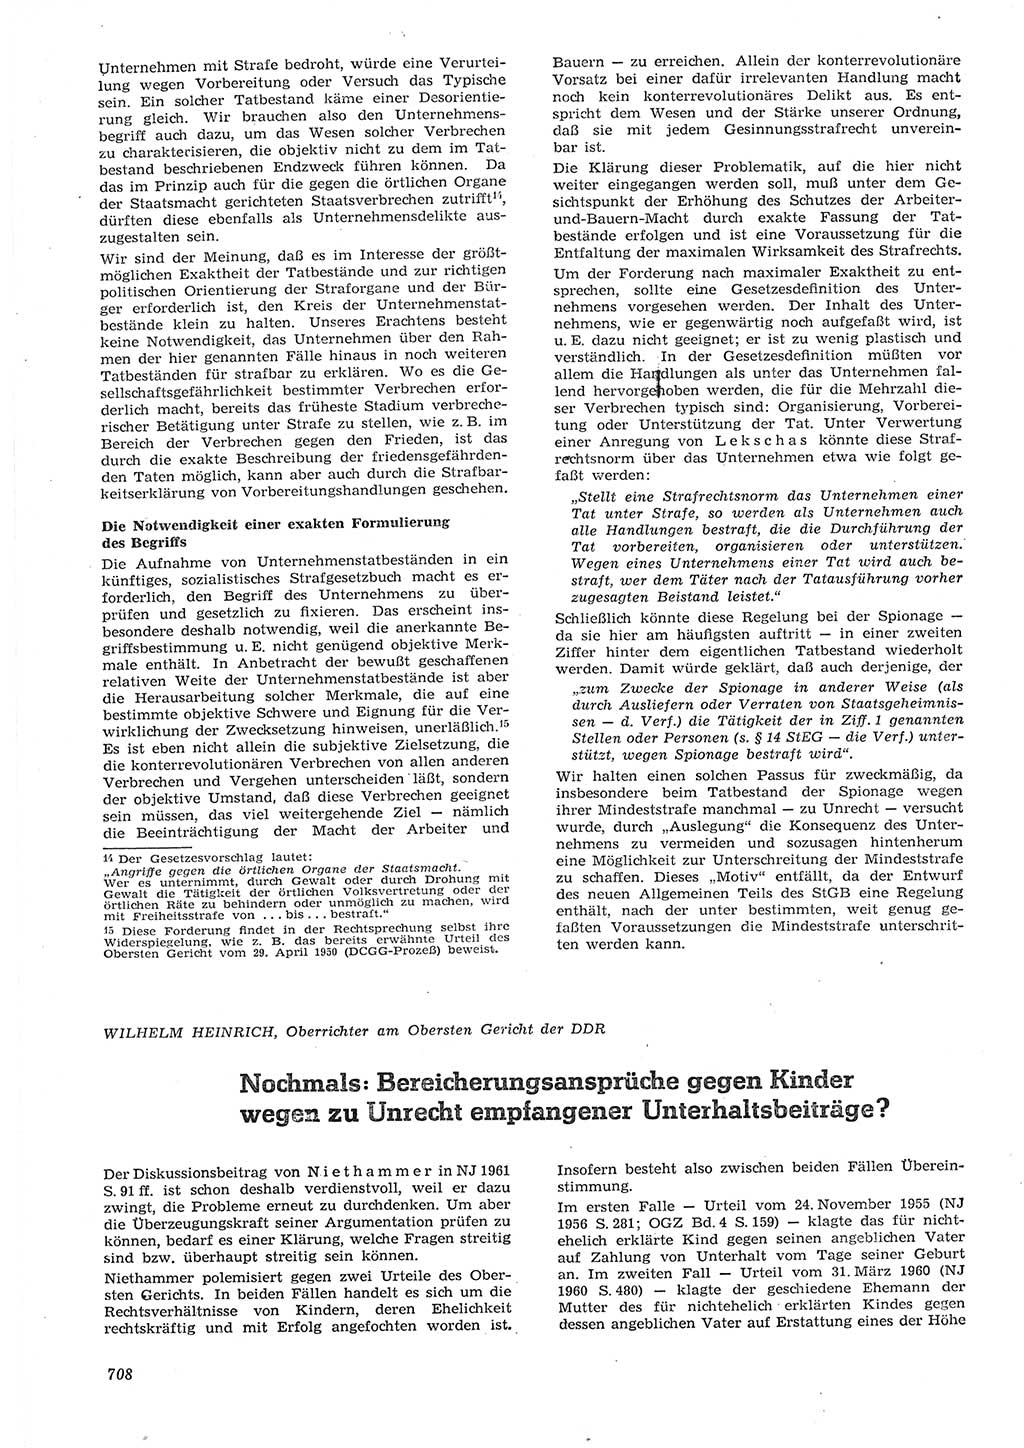 Neue Justiz (NJ), Zeitschrift für Recht und Rechtswissenschaft [Deutsche Demokratische Republik (DDR)], 15. Jahrgang 1961, Seite 708 (NJ DDR 1961, S. 708)